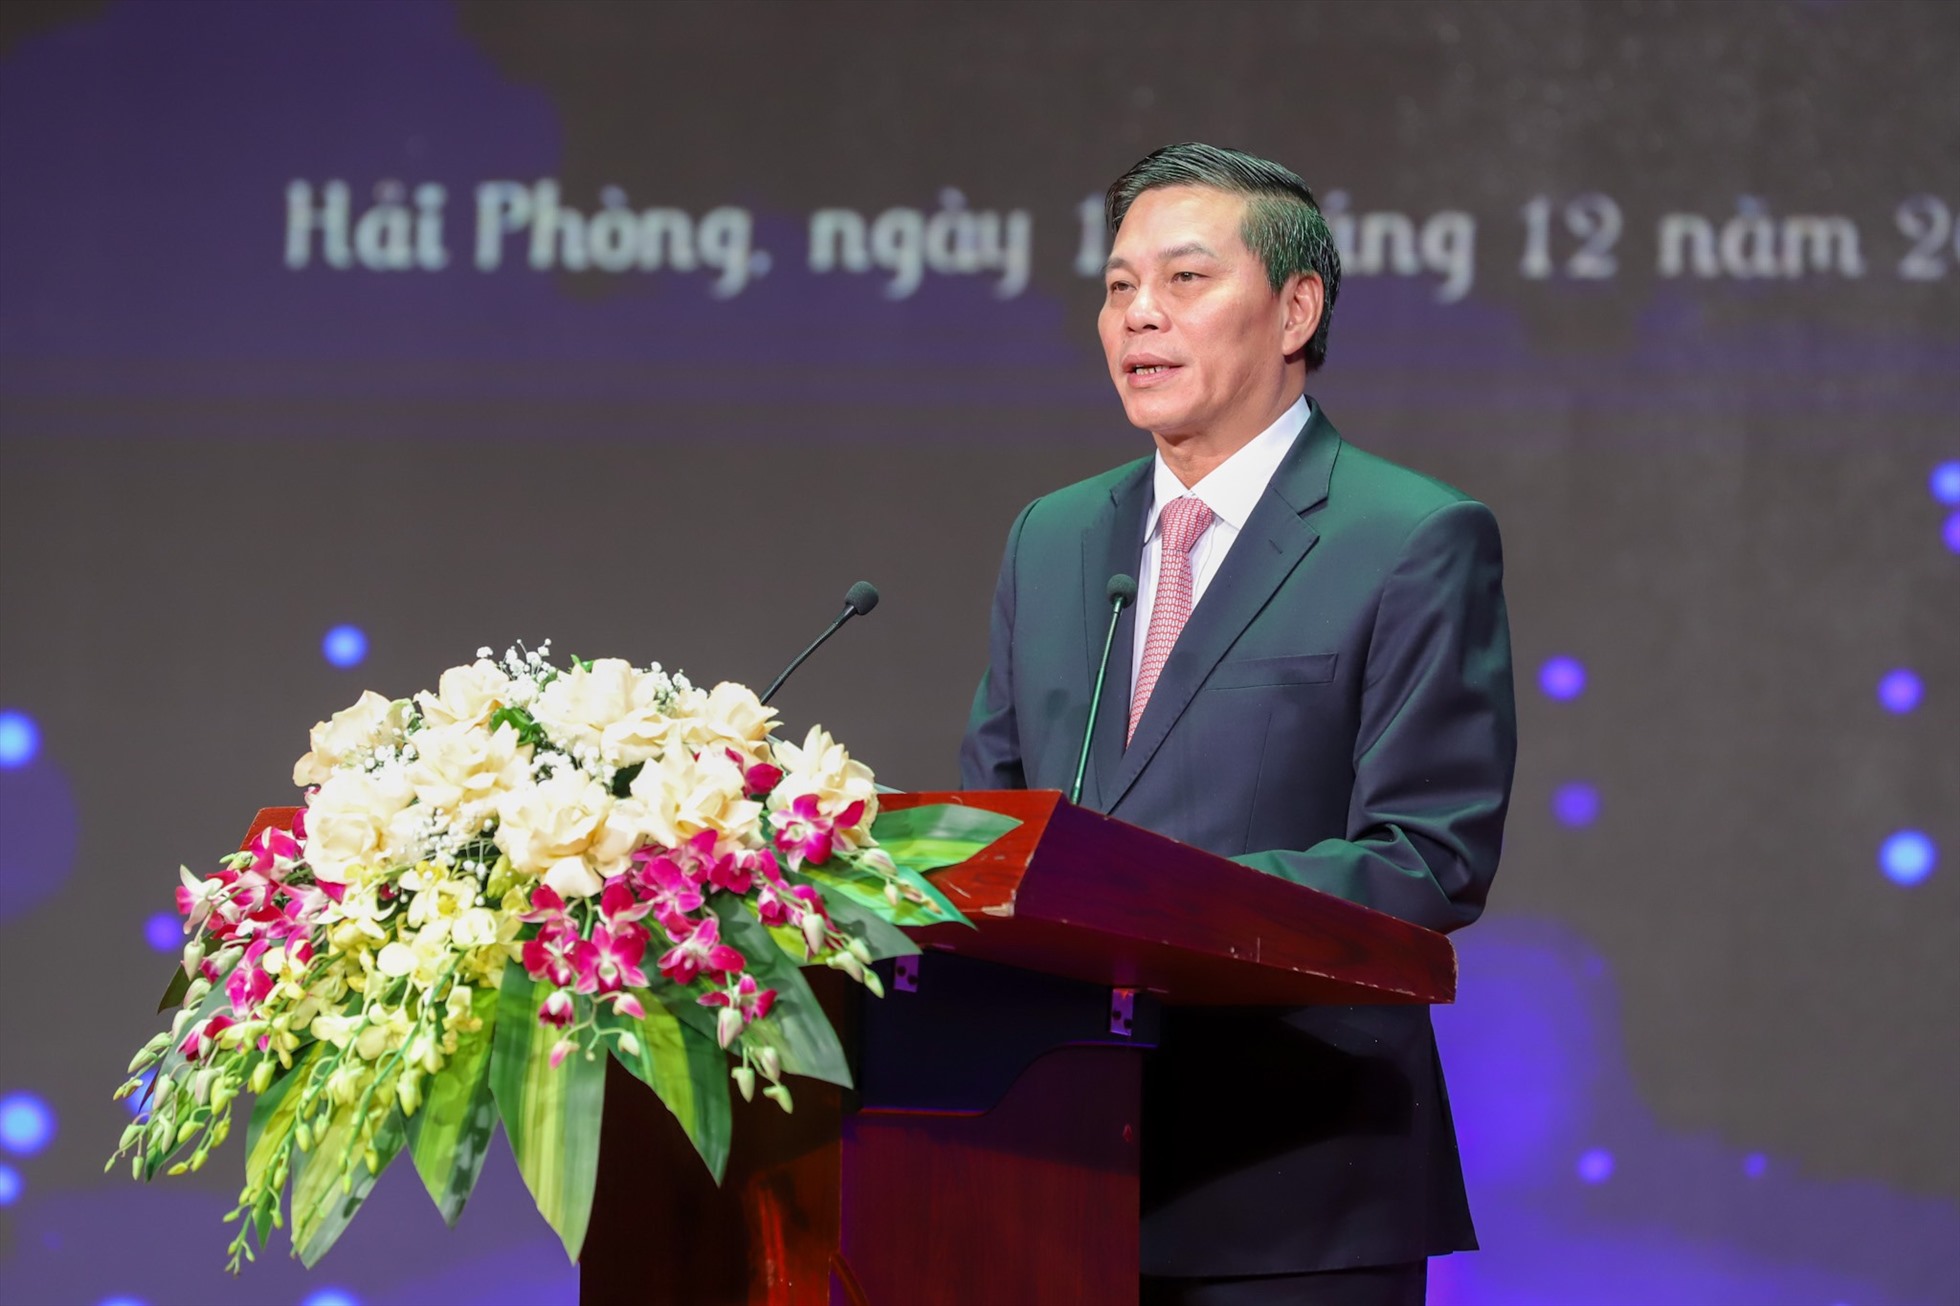 Chủ tịch UBND TP Hải Phòng - ông Nguyễn Văn Tùng phát buổi tại buổi lễ. Ảnh: T.Hà